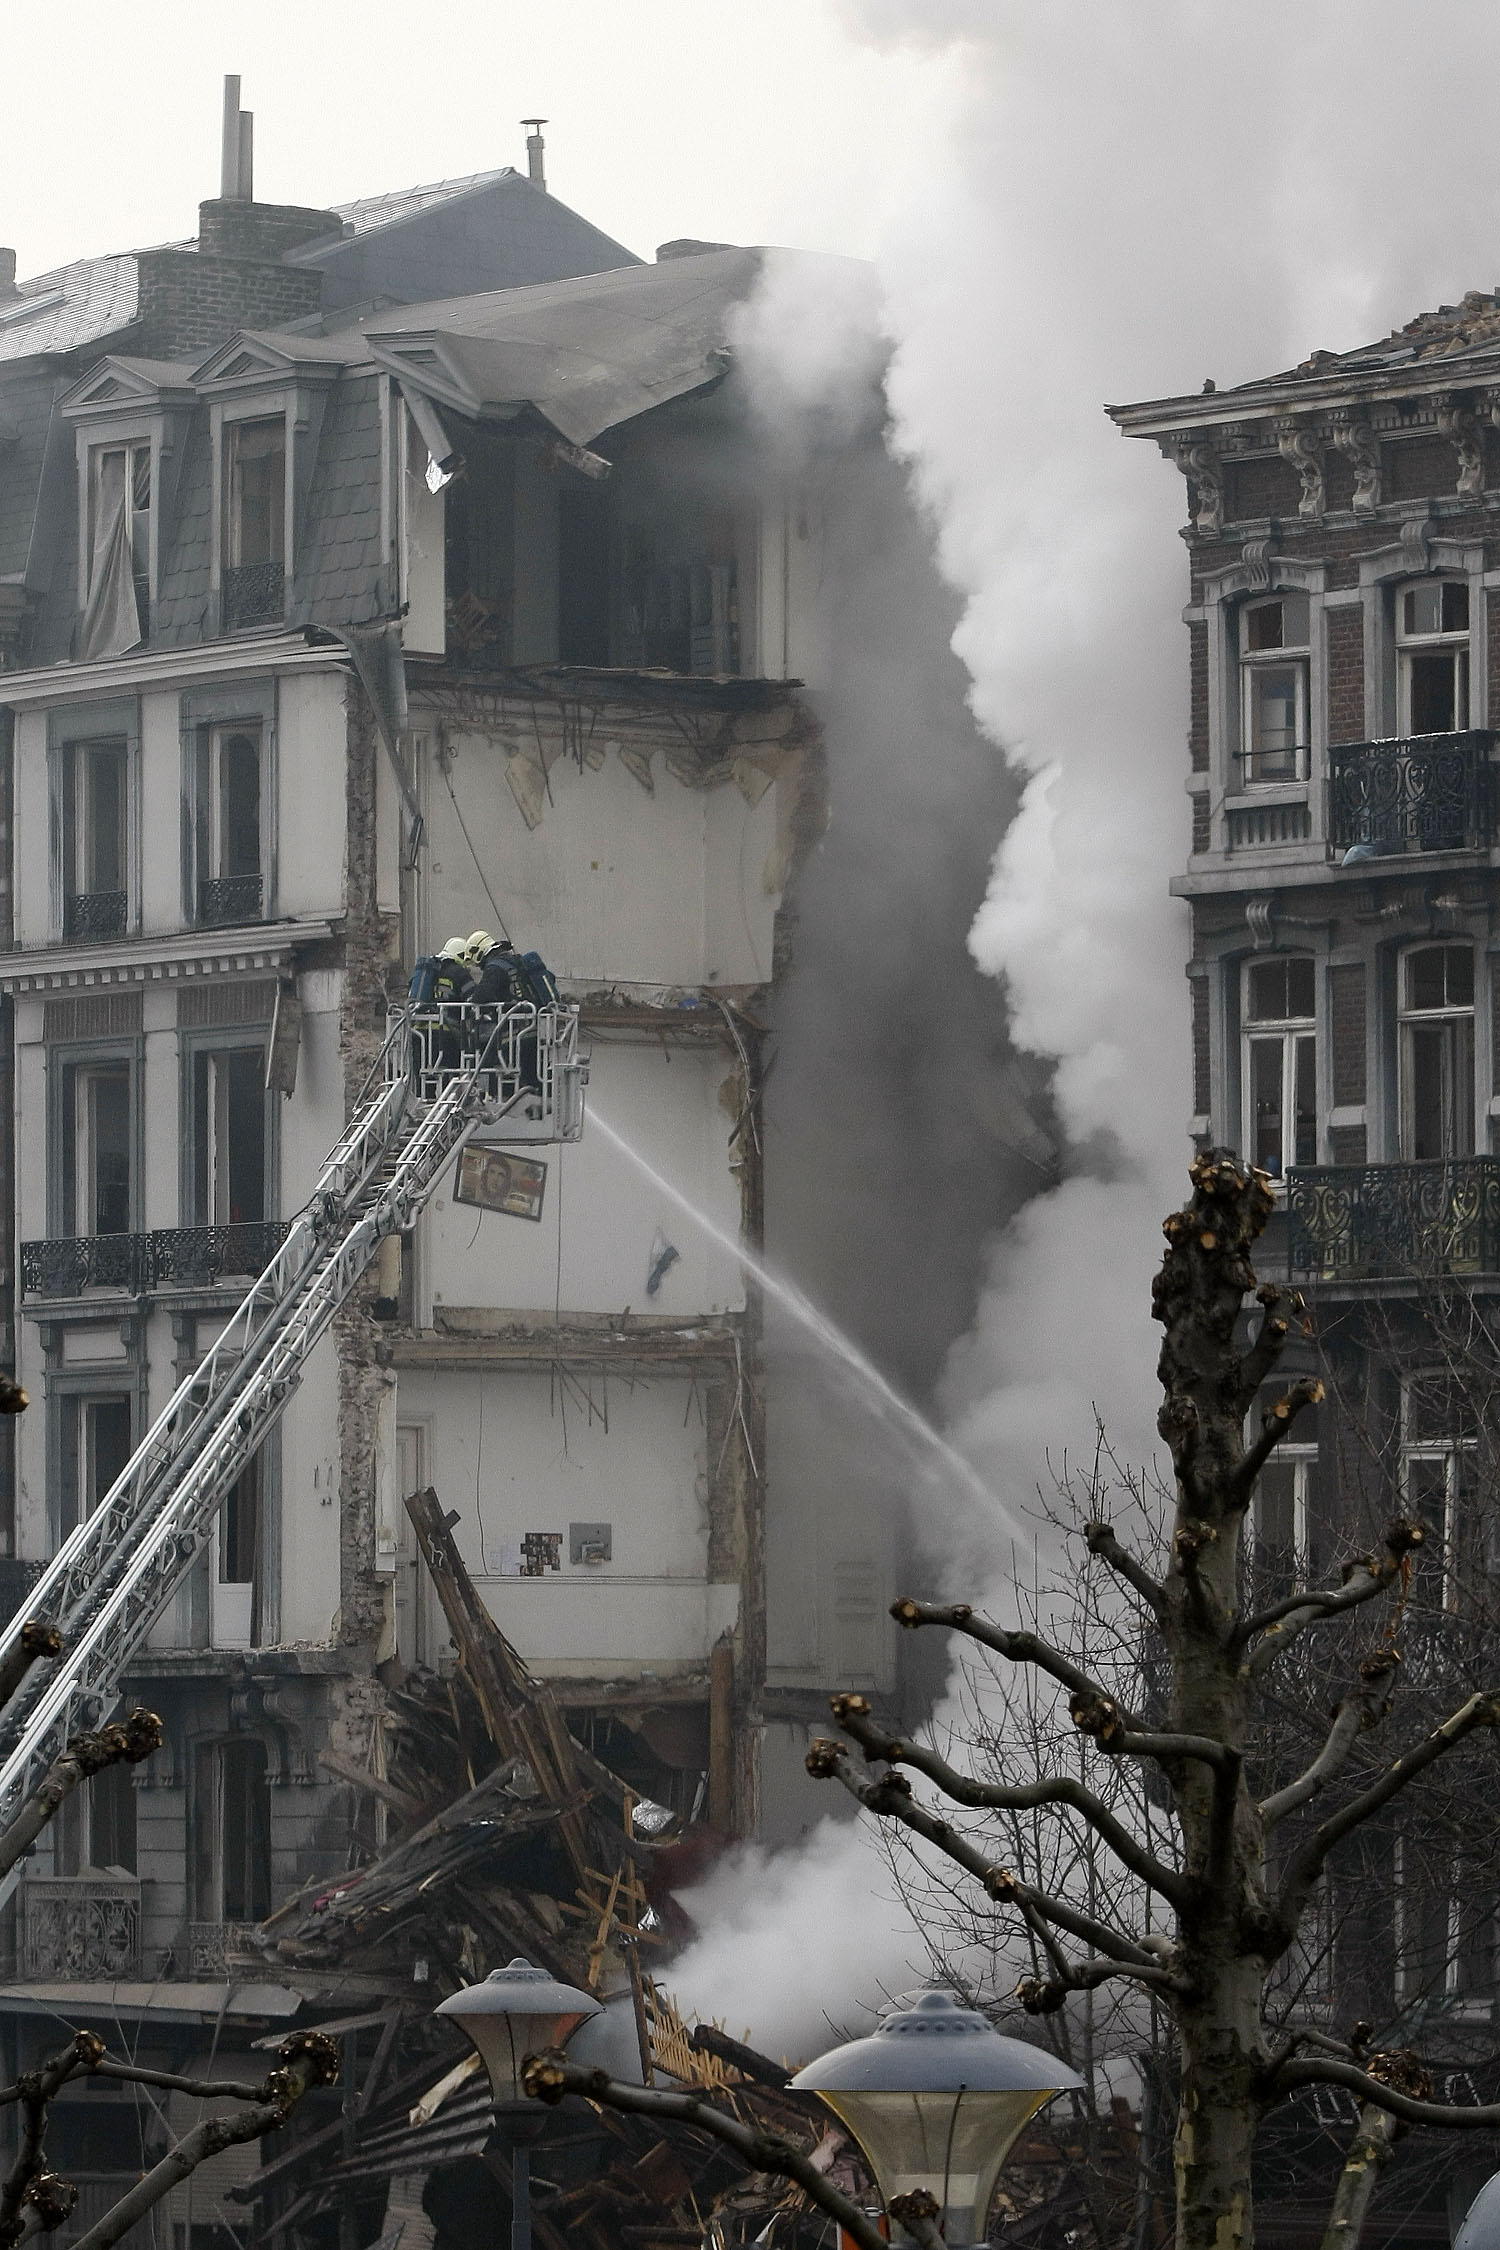 Olycka, Eld, Olyckor, Belgien, Brand, Explosion